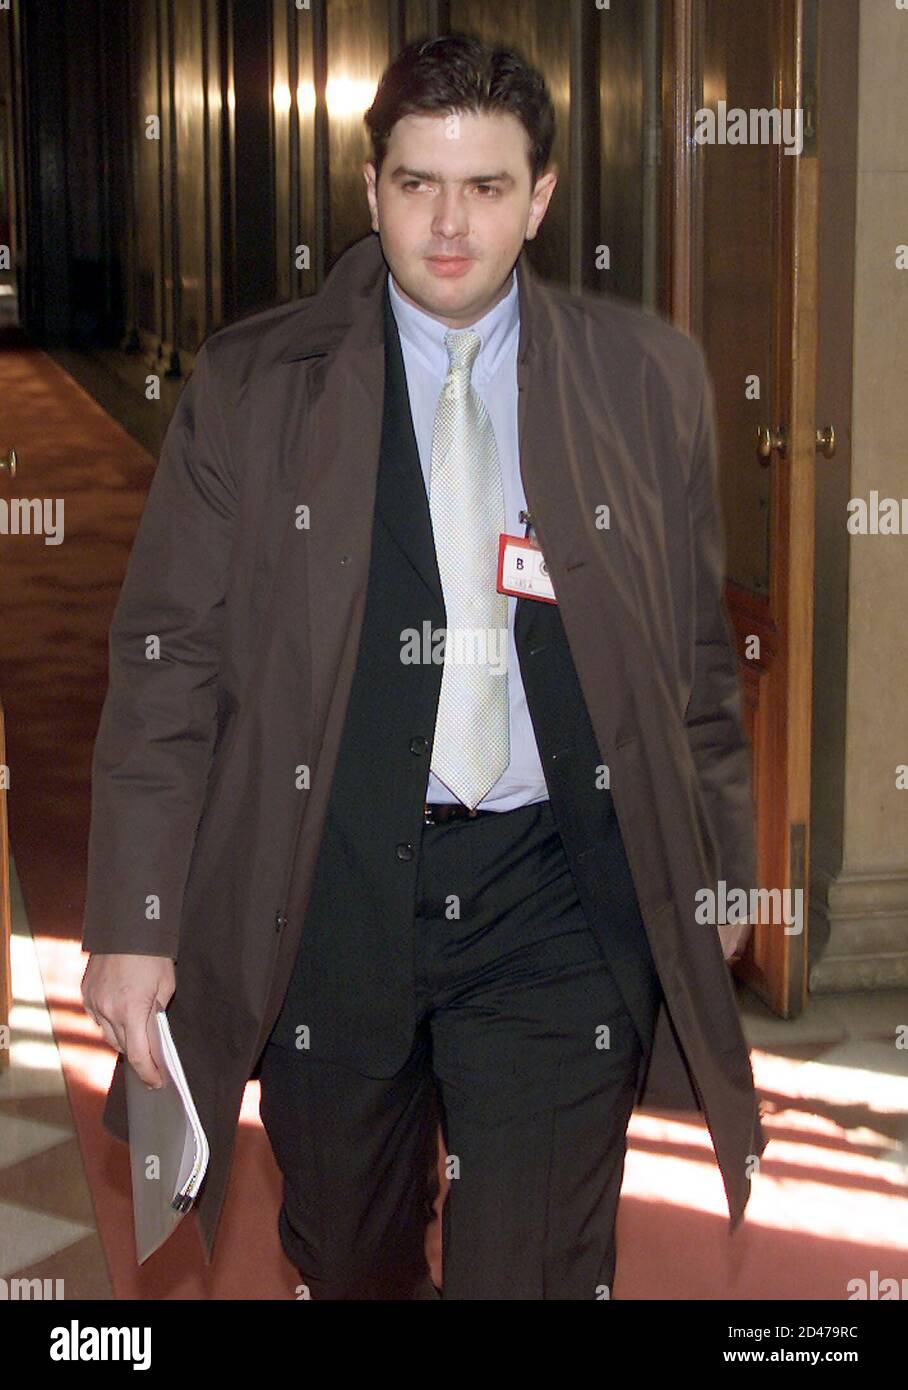 Jan Klima, der Sohn von Ex-Bundeskanzler Viktor Klima, war am Mittwoch, dem  25. April 2001 als Zeuge zur Euro Team-Affaere vor den parlamentarischen  Untersuchungsausschuss geladen worden. Im Bild Klima auf dem Weg